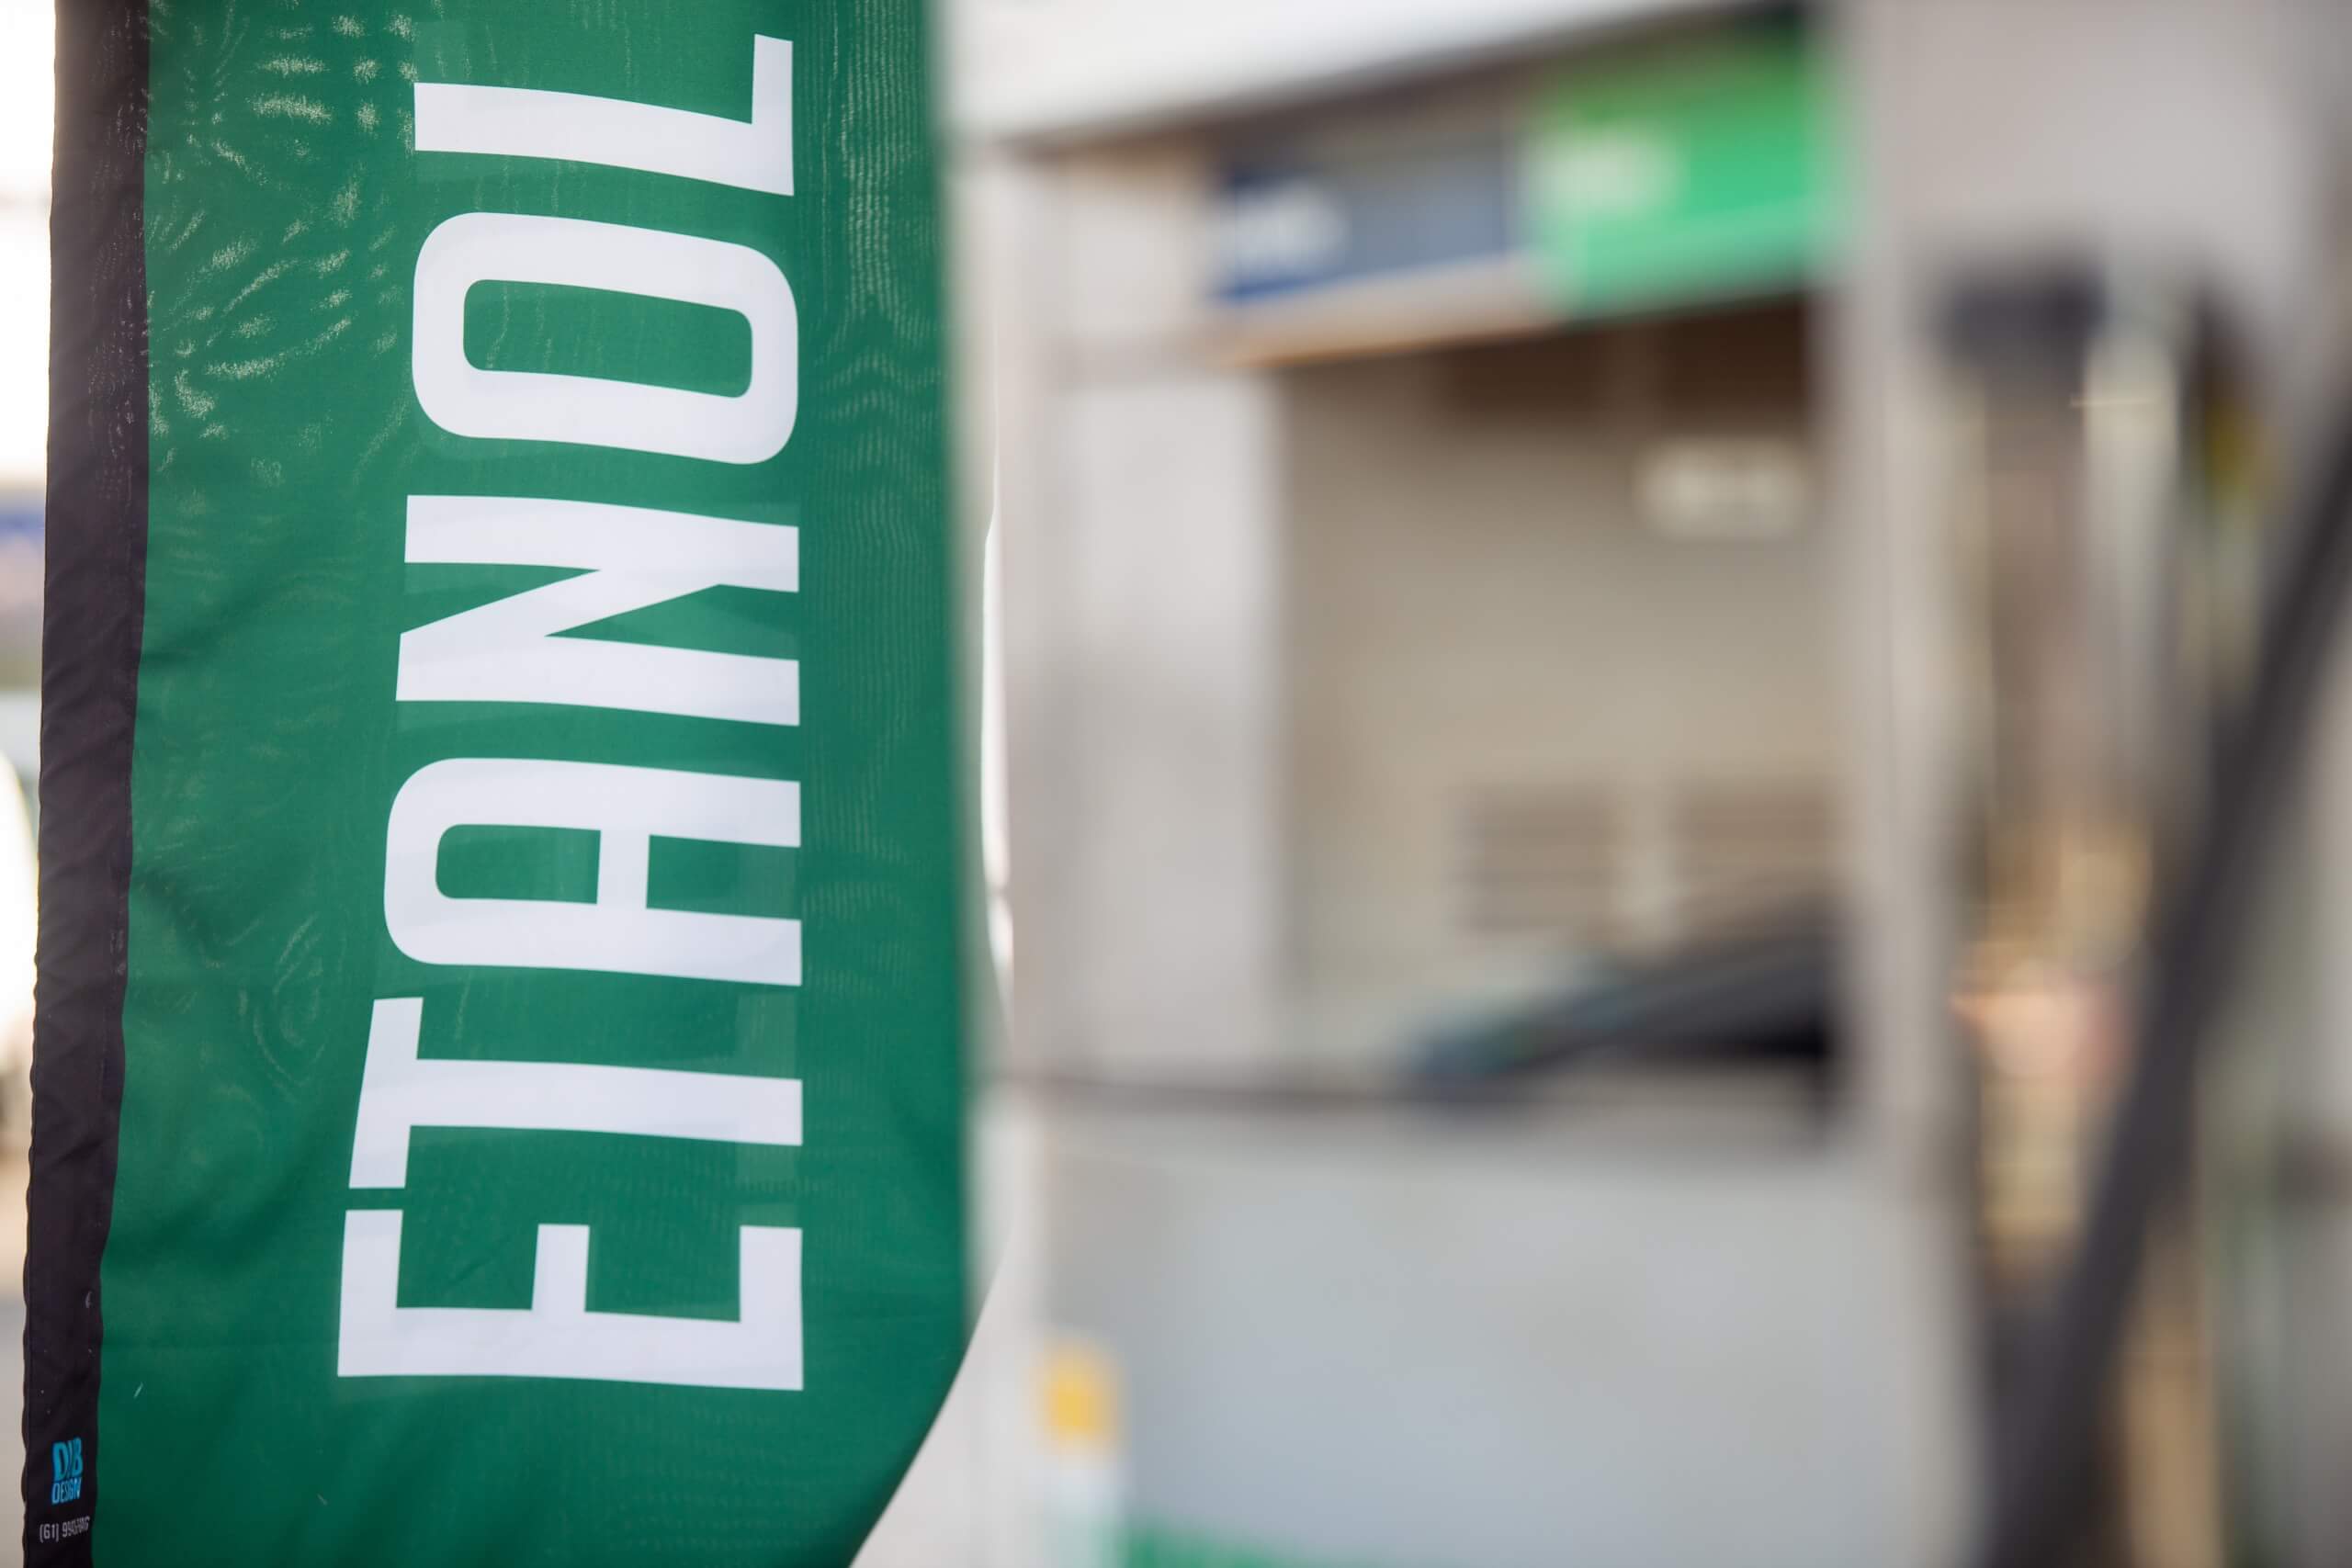 Etanol anidro e biodiesel são excluídos da regra para nova base de cálculo de ICMS